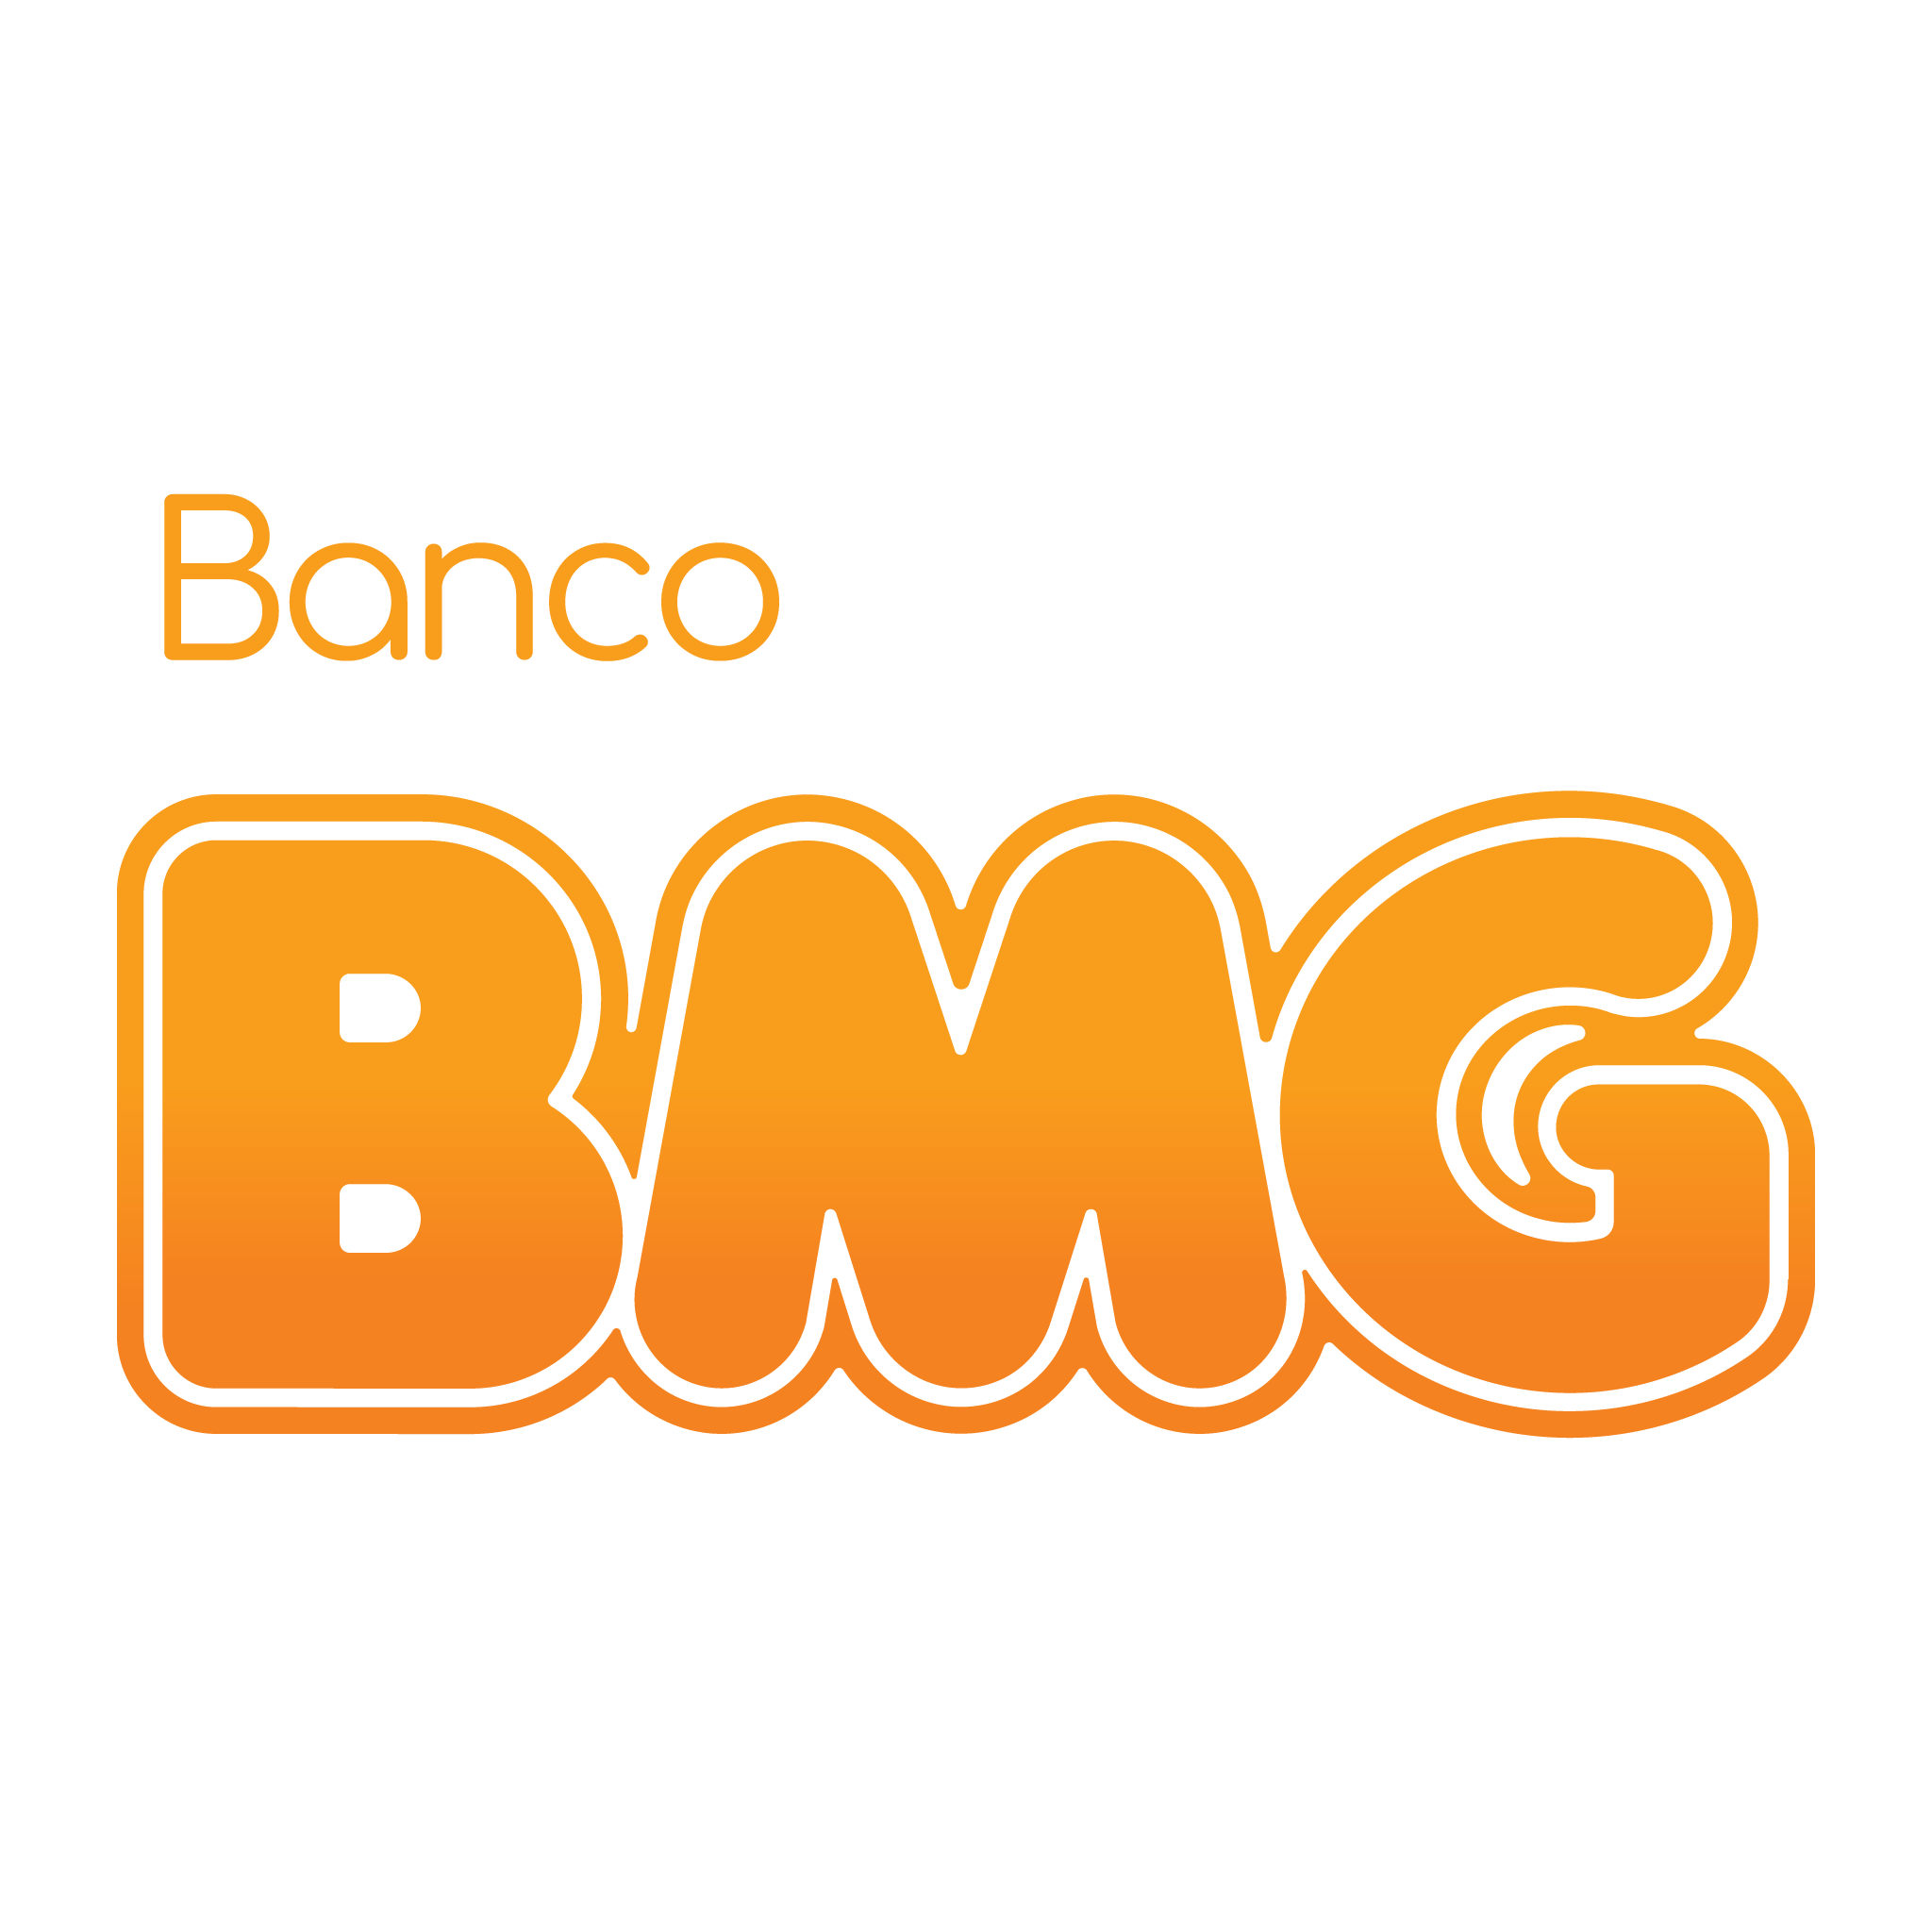 logo-banco-bmg-2048